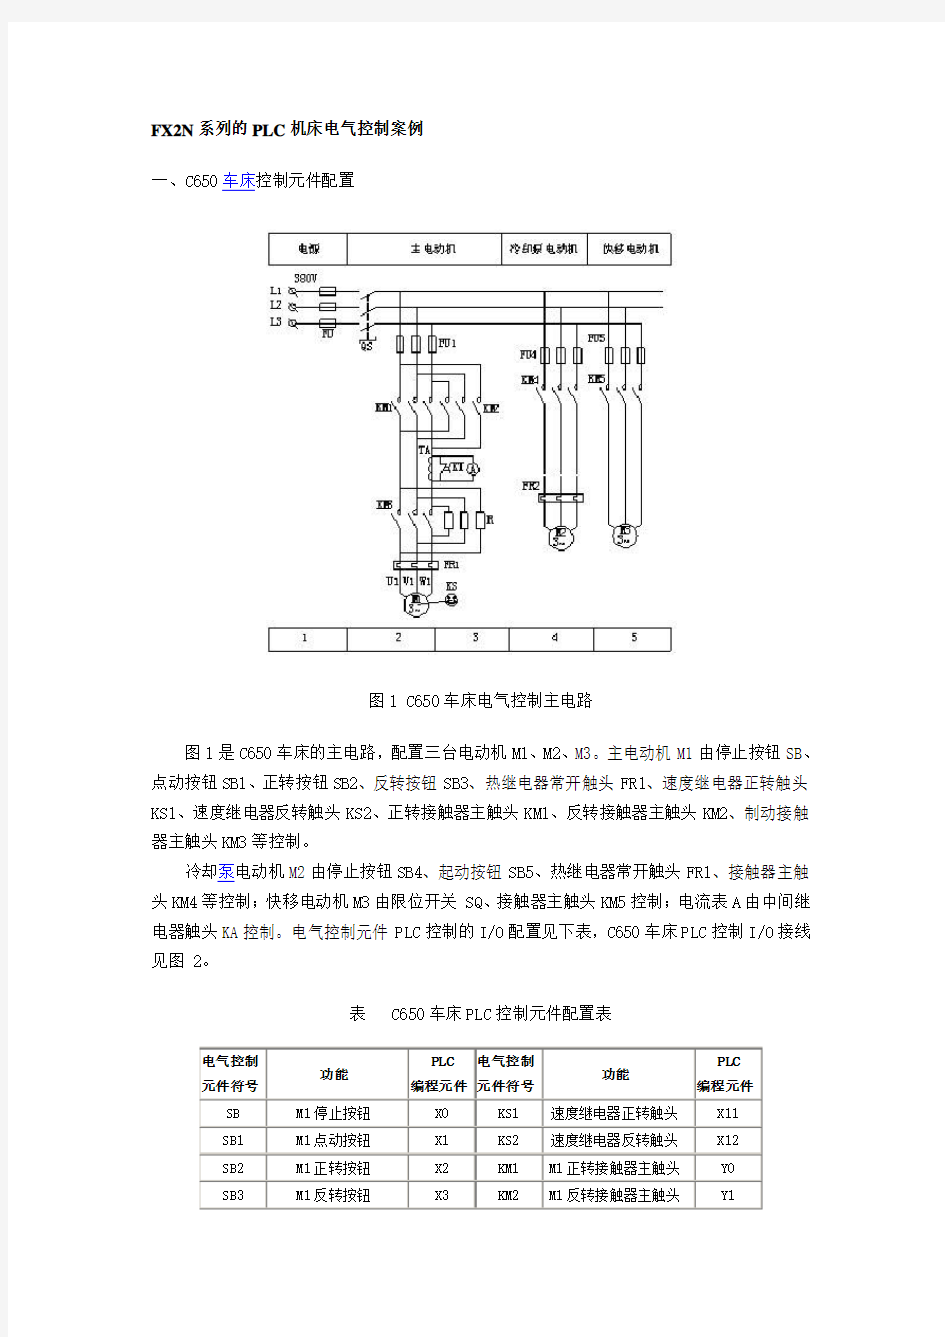 FX2N系列的PLC机床电气控制案例-C650